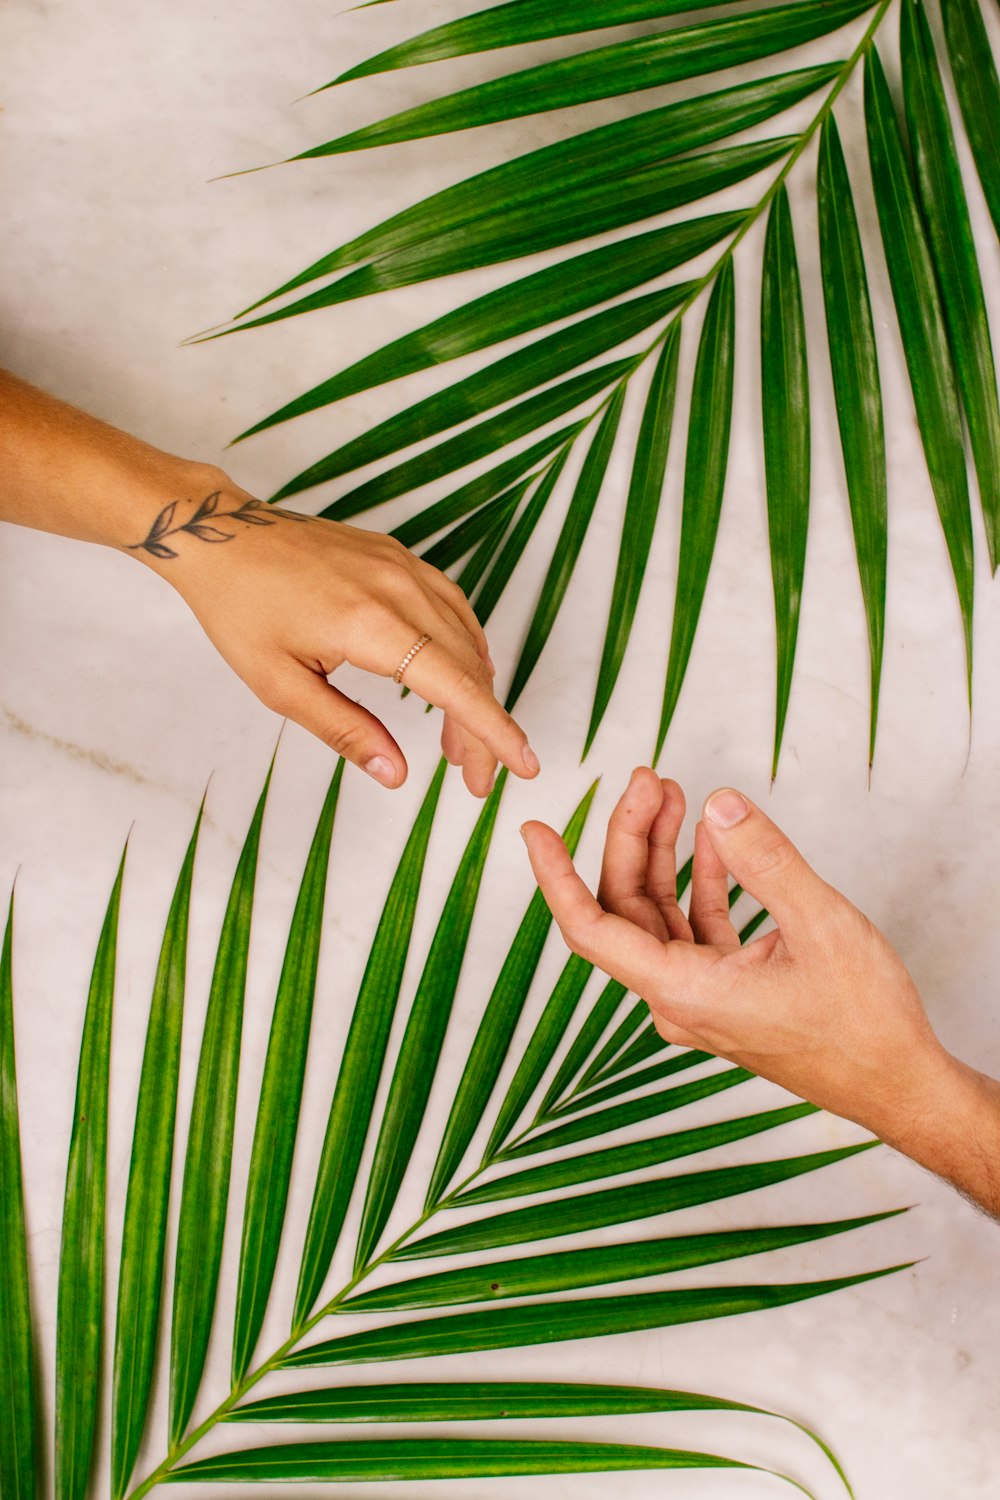 Die Hand der Person in der Nähe des Palmblatts